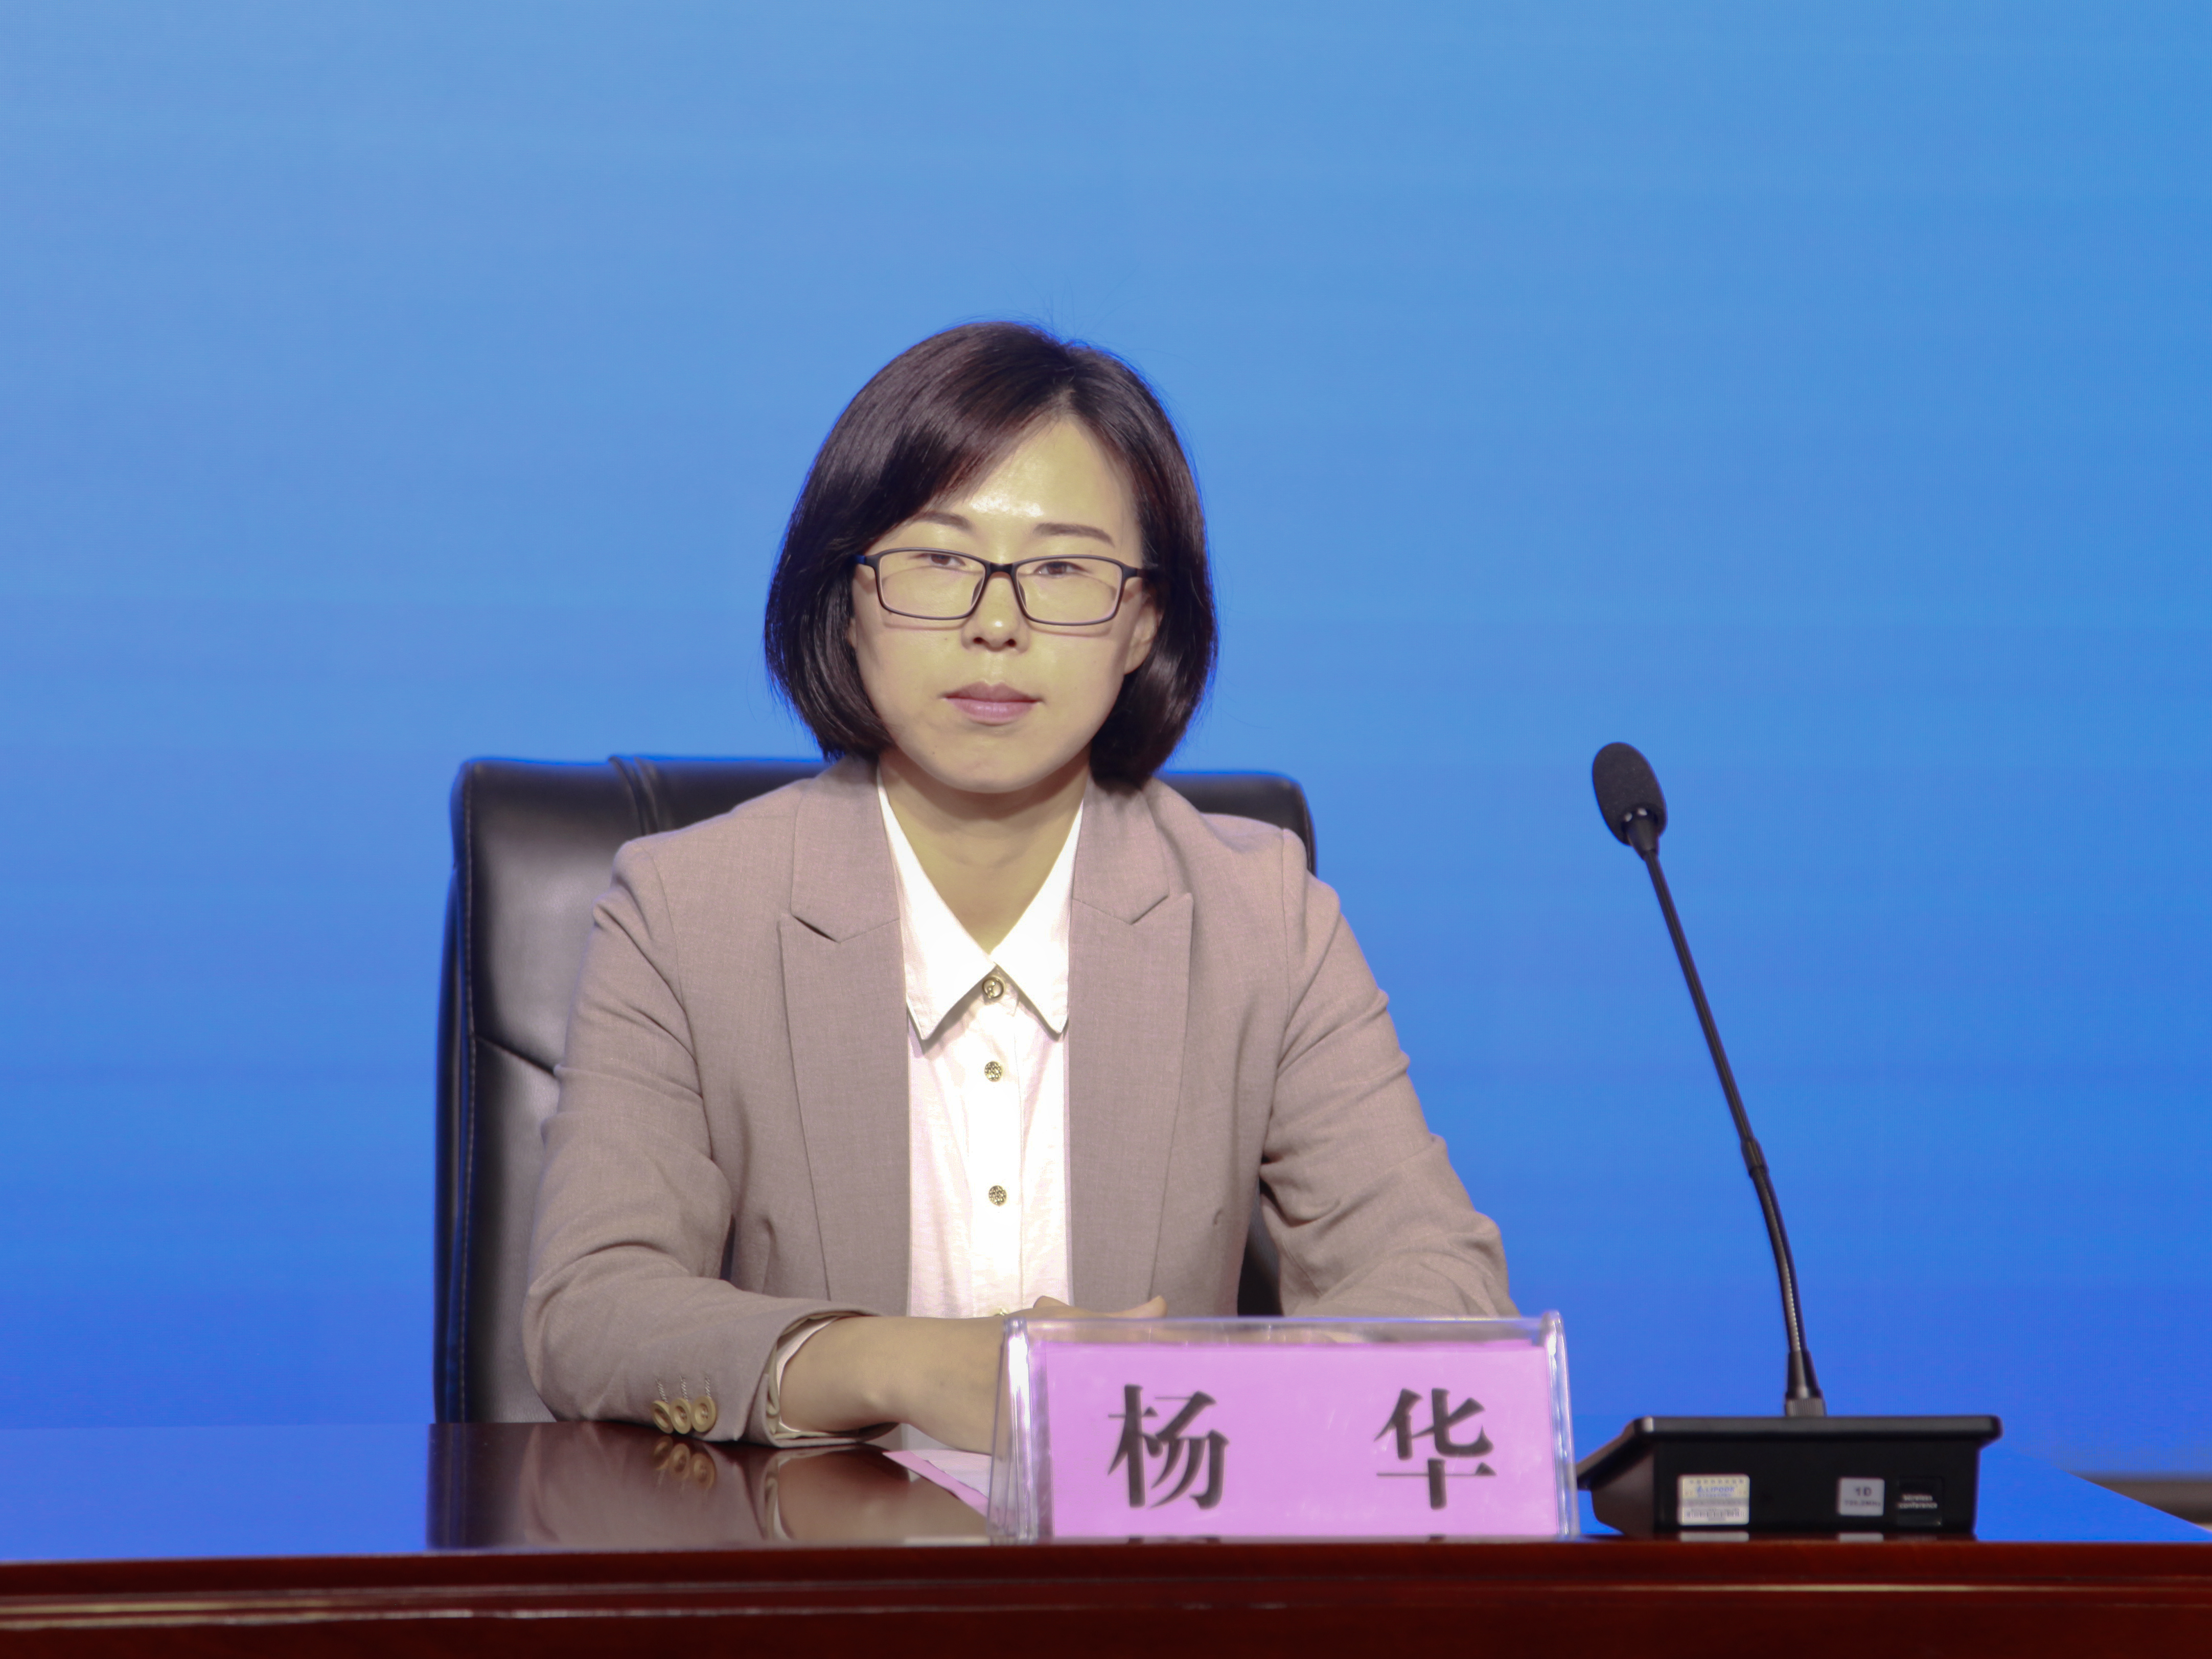 局副局长吴瑞敏,新县人民政府副县长杨华出席发布会并回答记者提问